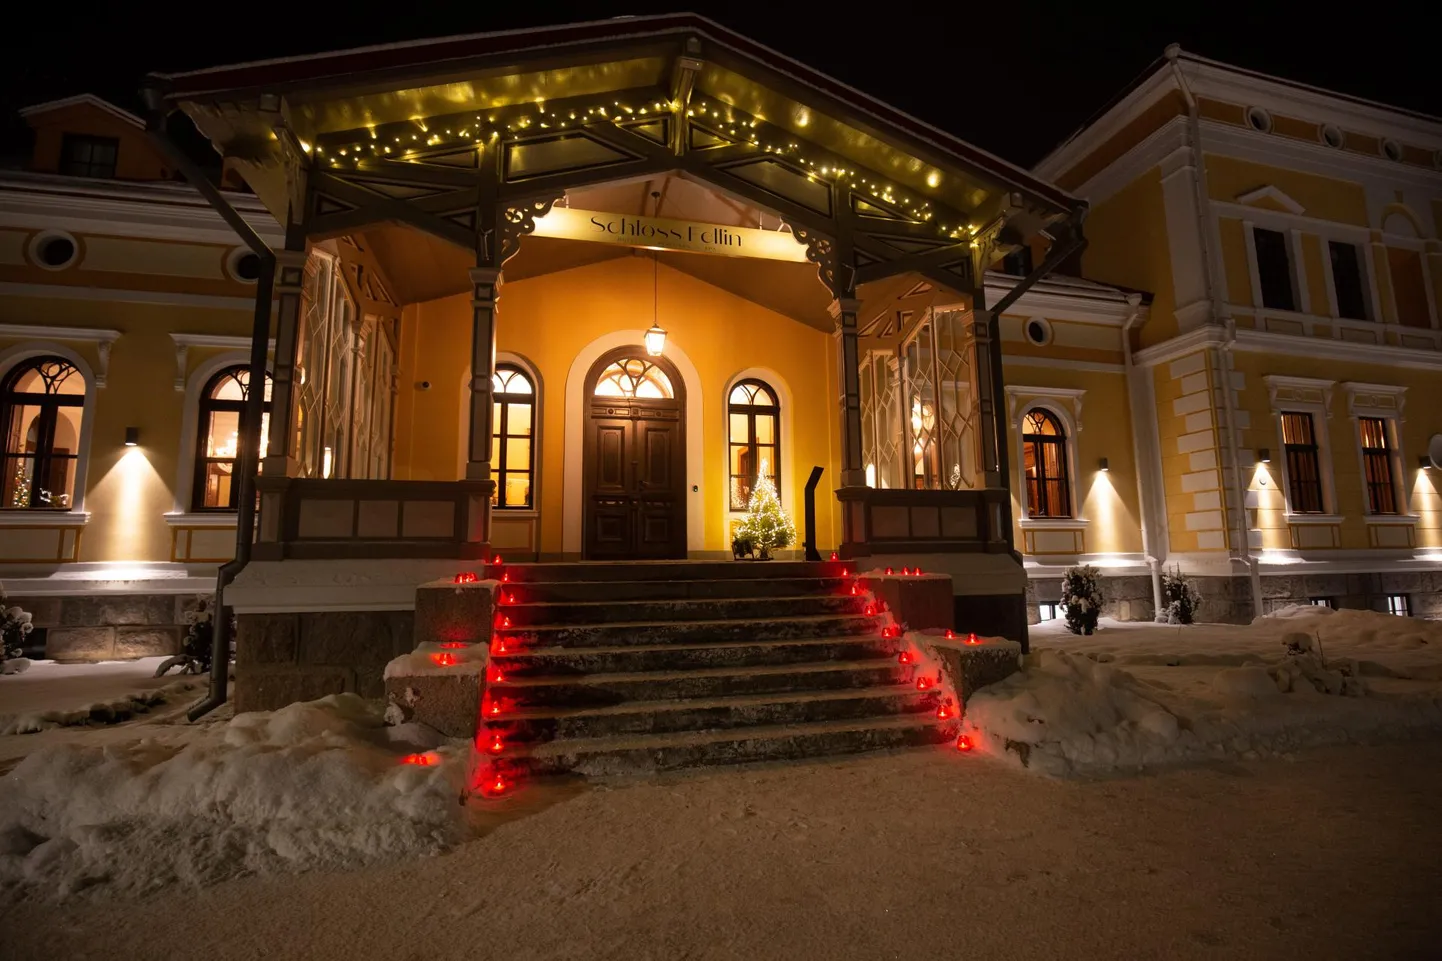 Schloss Fellinis aastavahetuspeo pileti hinna sisse kuulub neljakäiguline õhtusöök, kontsert ja diskobaar.